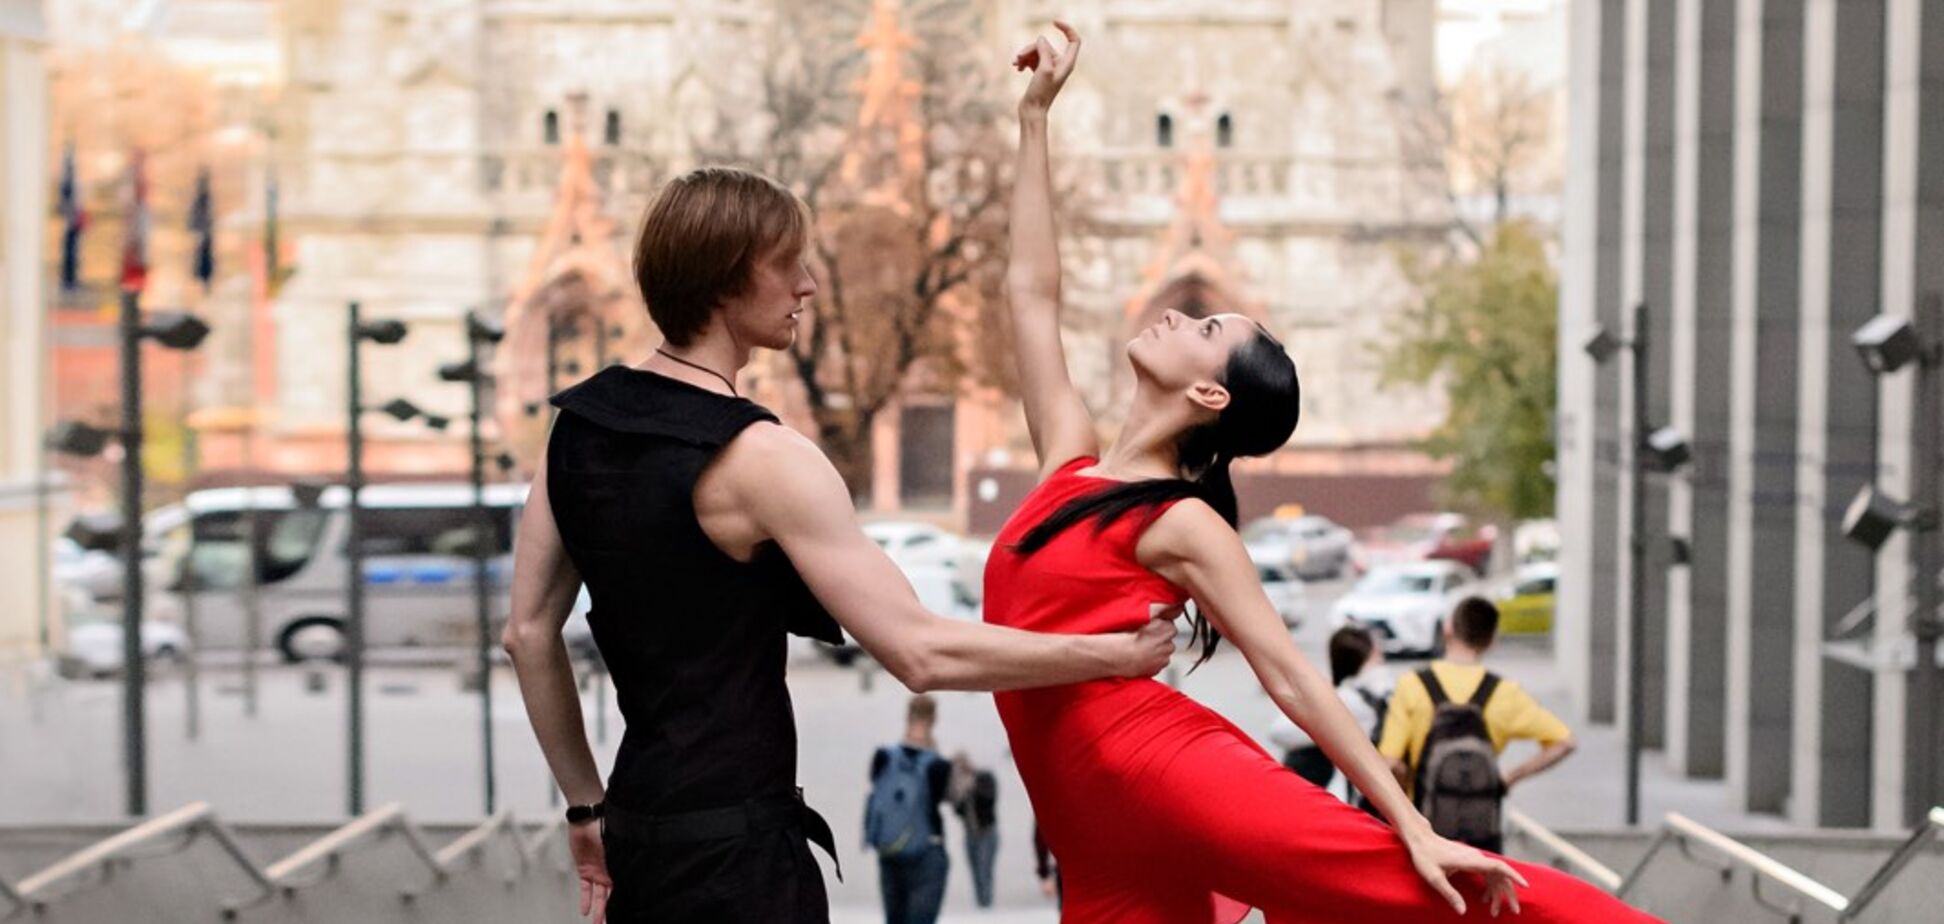 Премьер национального балета Нидерландов воскресит в Киеве партию Вацлава Нижинского